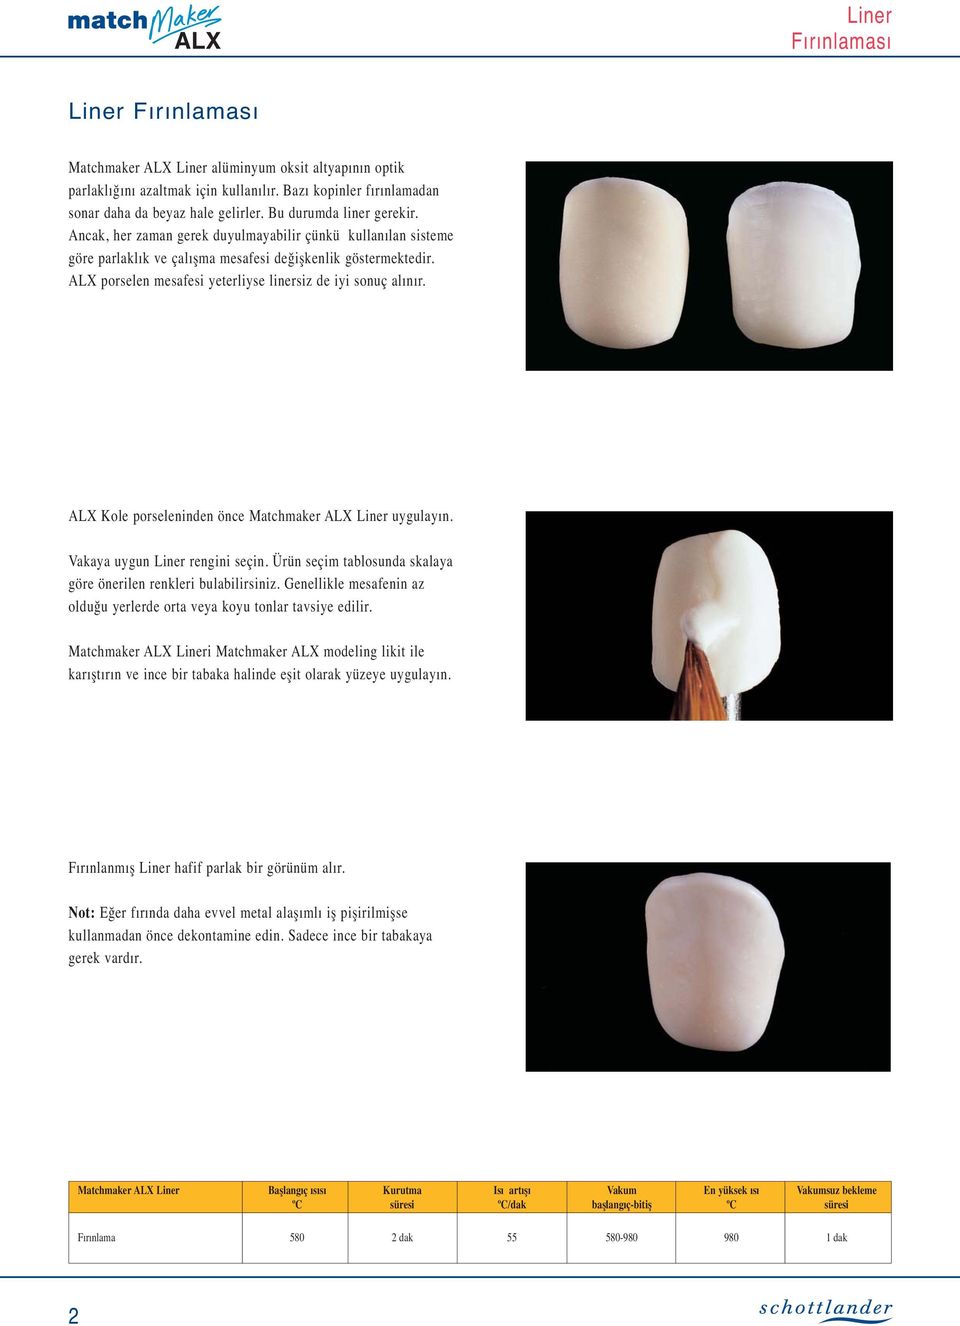 ALX porselen mesafesi yeterliyse linersiz de iyi sonuç alınır. ALX Kole porseleninden önce Matchmaker ALX Liner uygulayın. Vakaya uygun Liner rengini seçin.